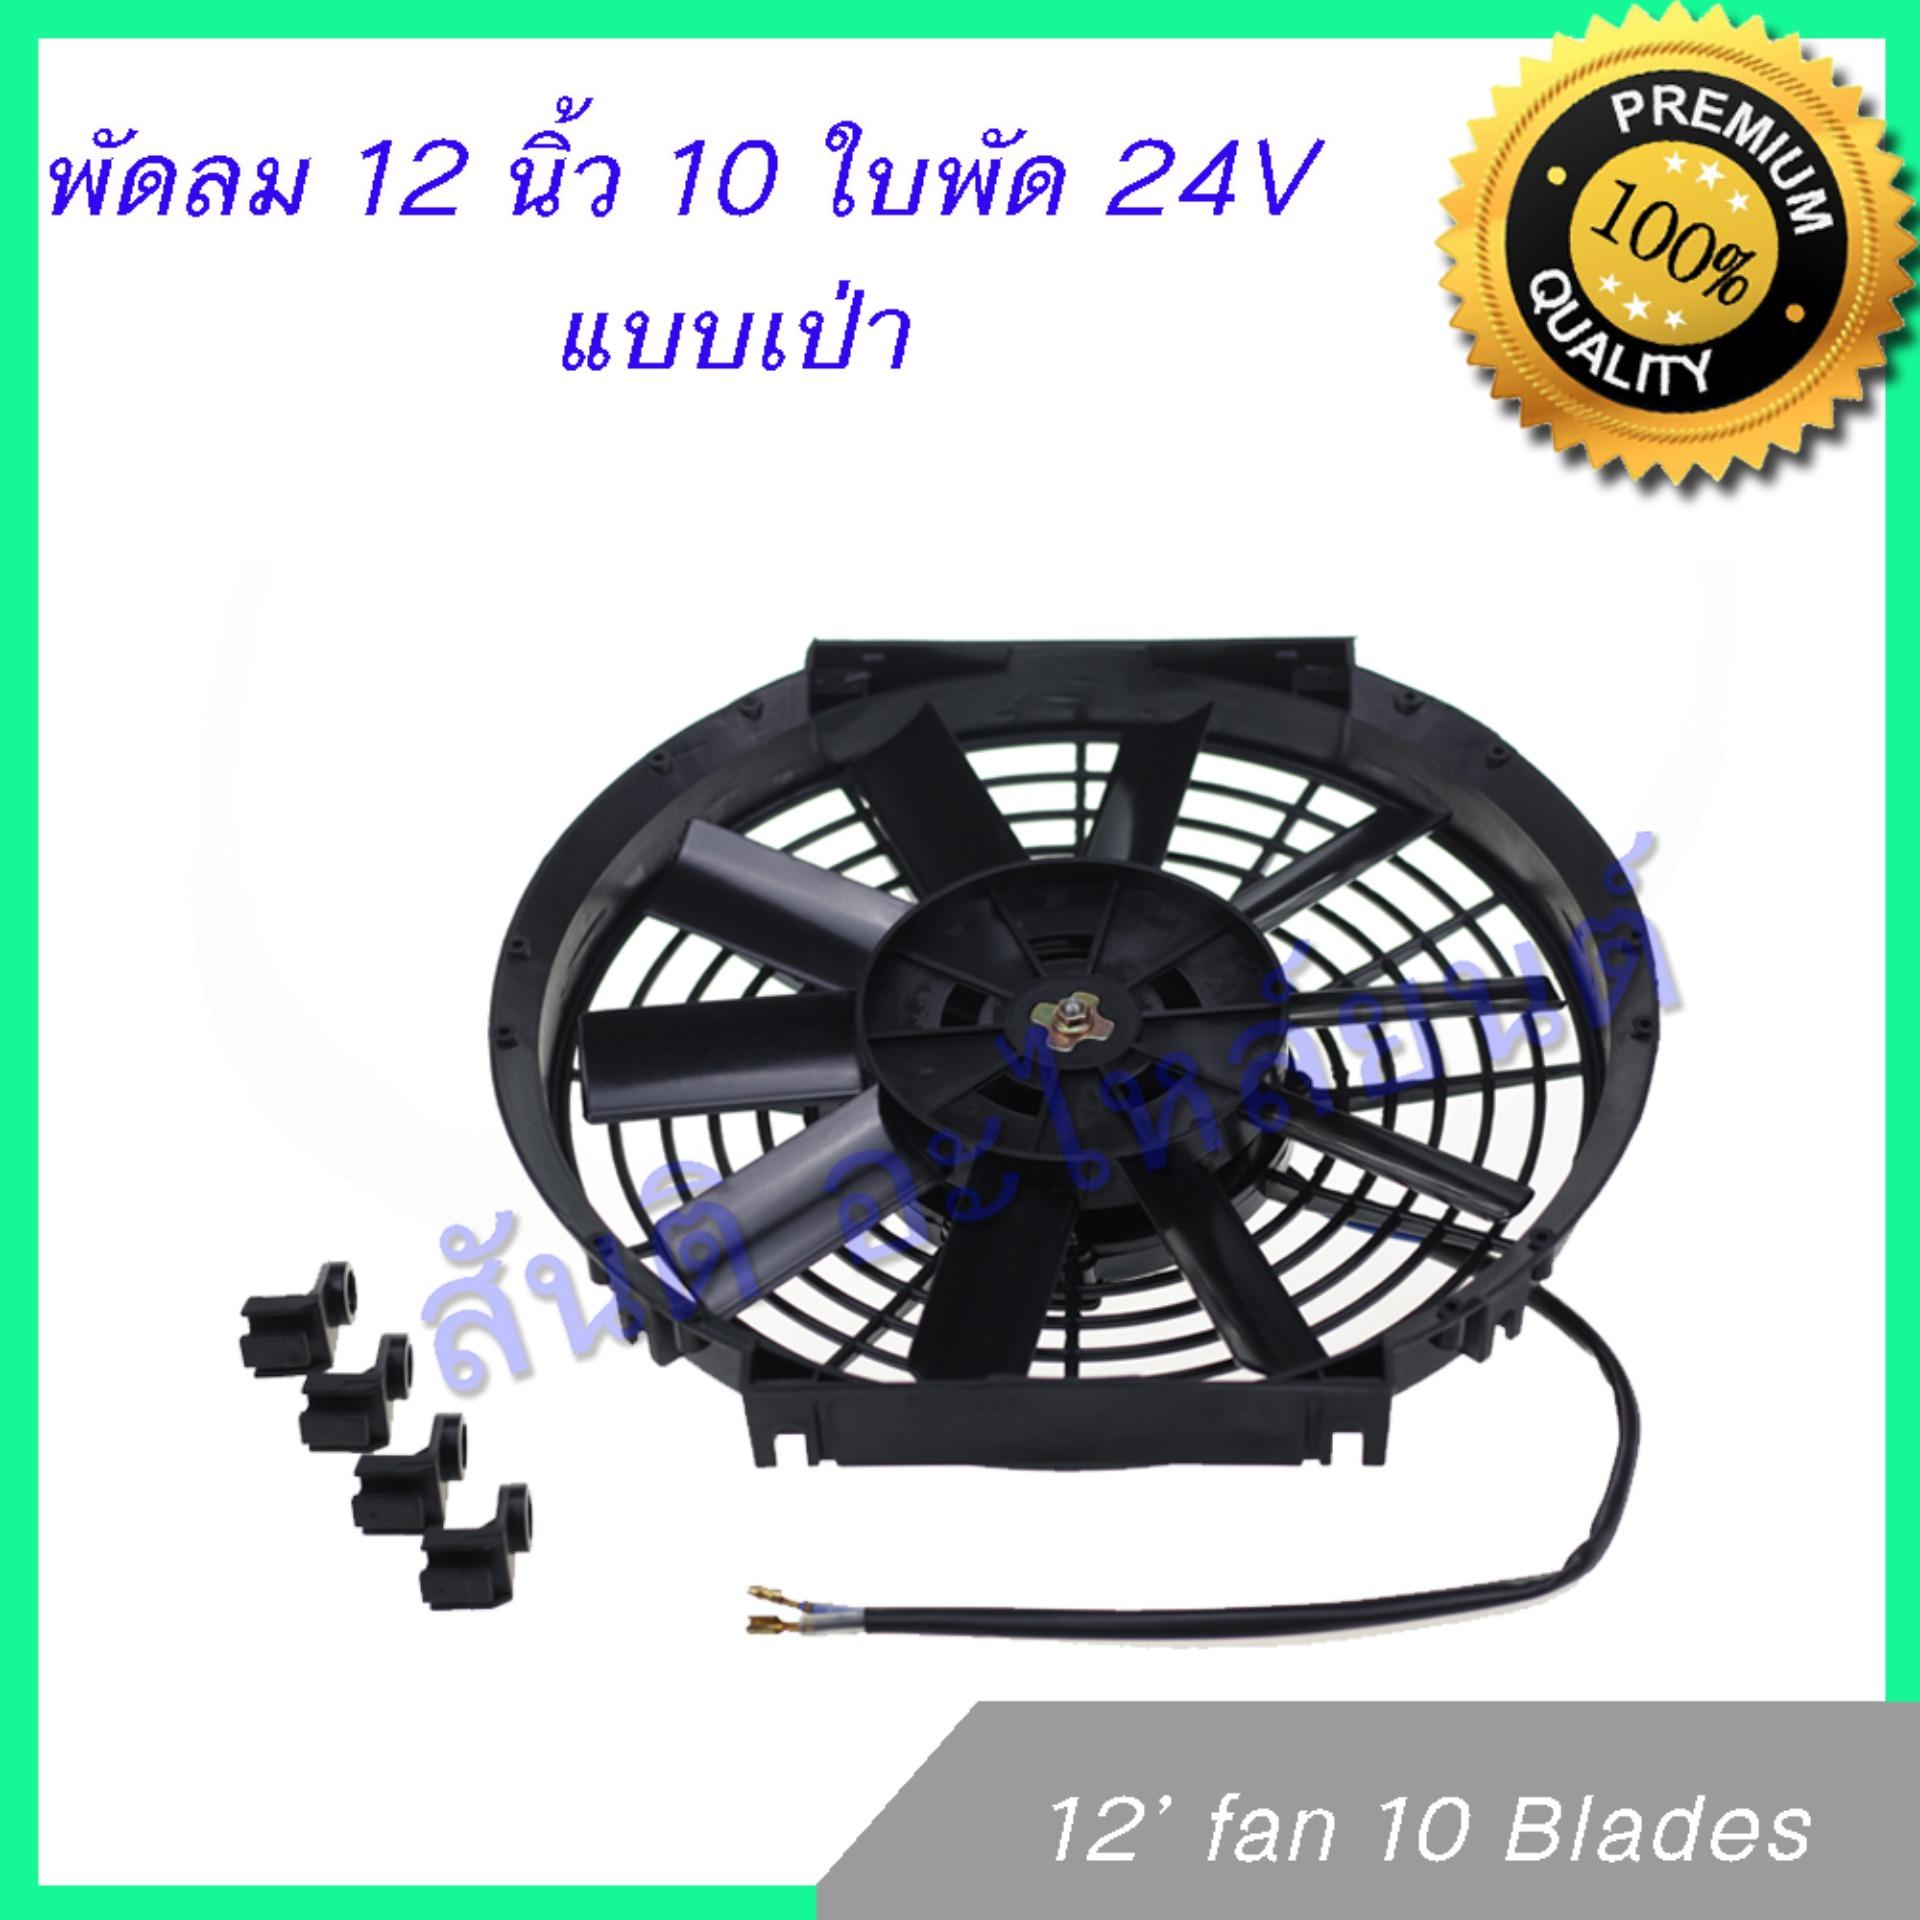 พัดลม 12 นิ้ว 10 ใบ 24V พัดลมหม้อน้ำ พัดลมแผงร้อน Fan 12 inch 10 blades condenser Radiator fan